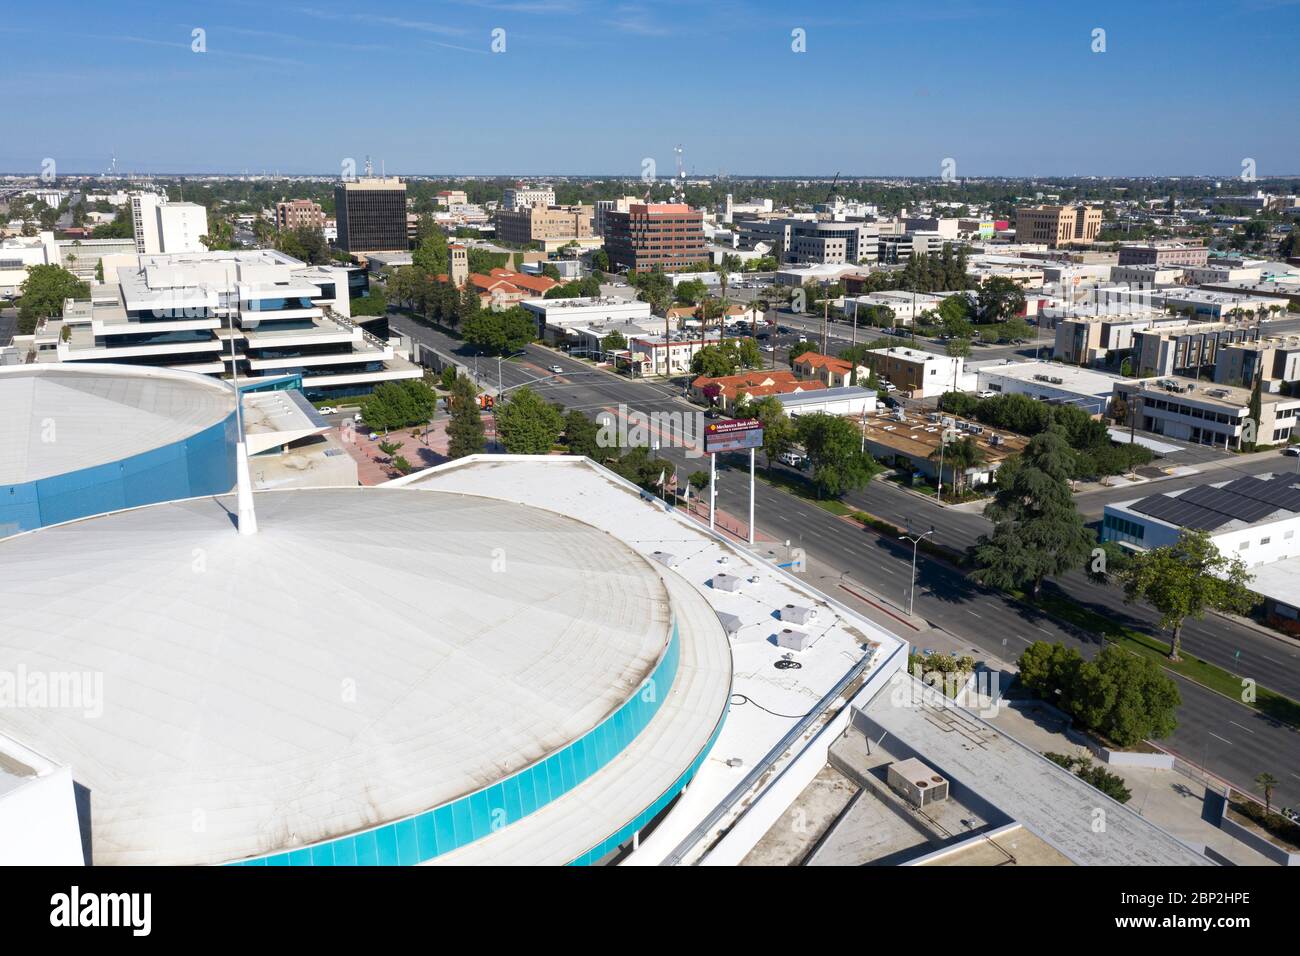 Vista aerea del centro di Bakersfield, centro congressi Foto Stock